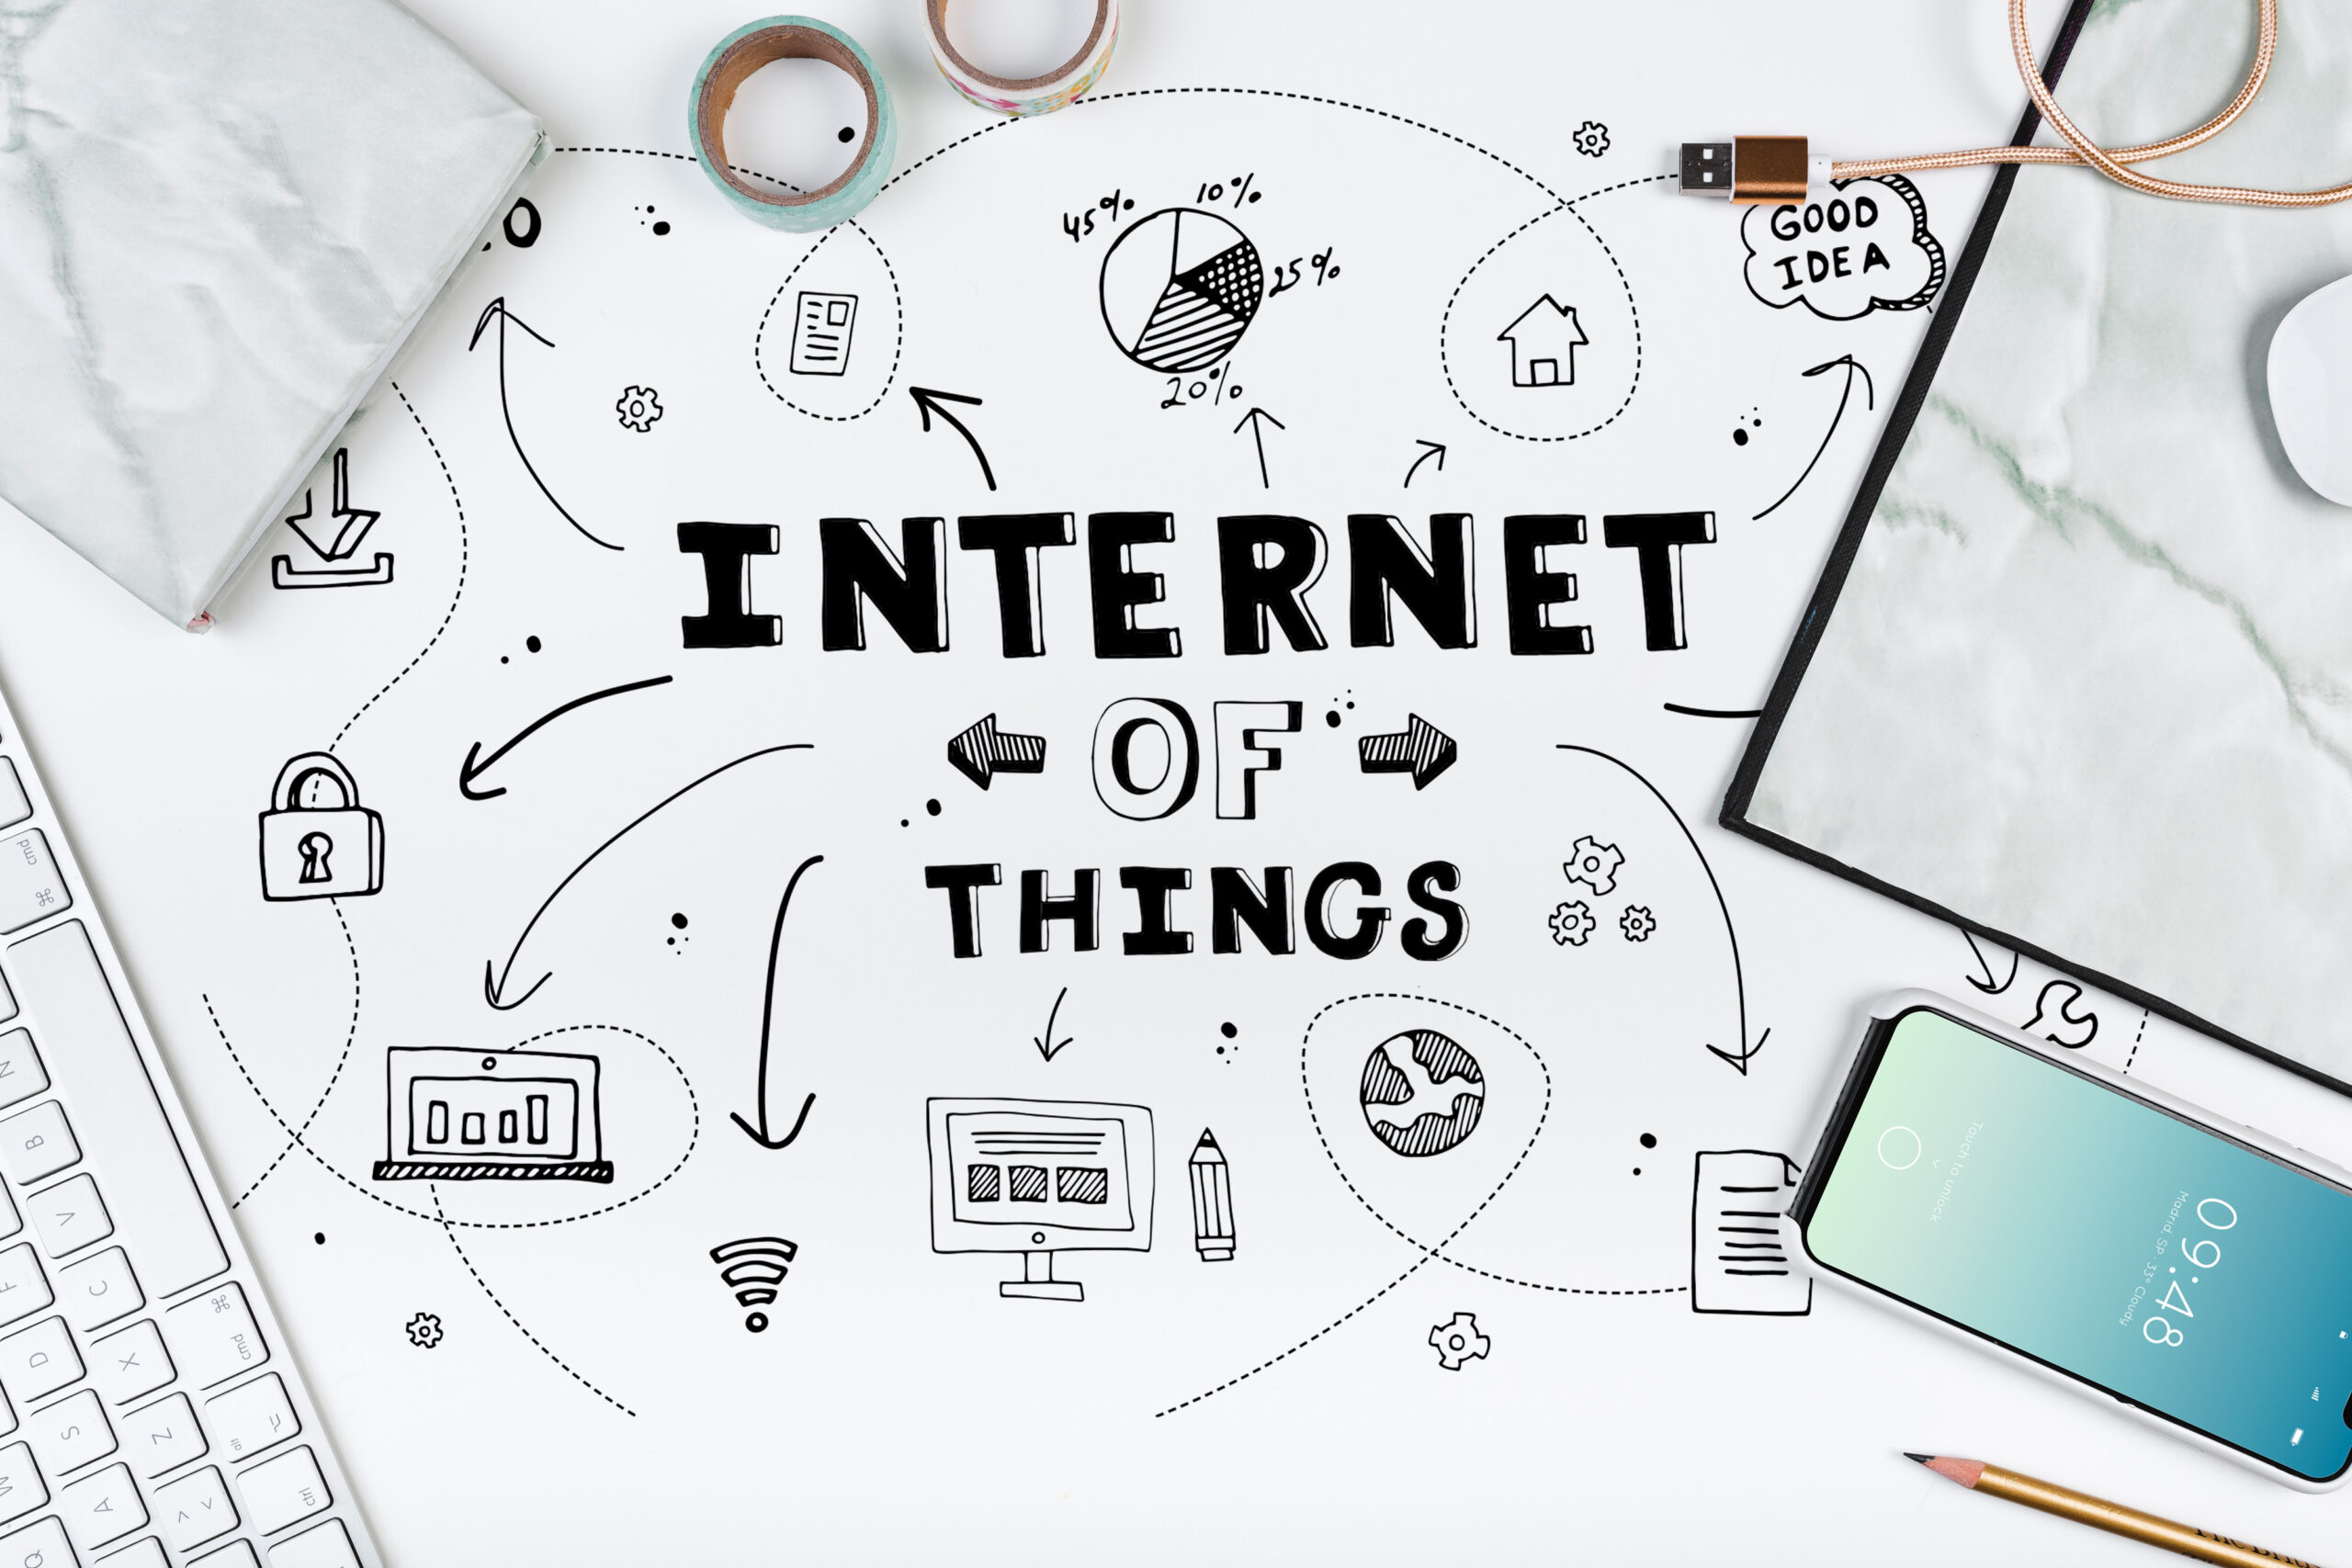 Internet of Things (IoT) : Pengertian, Prinsip, Dan Contoh